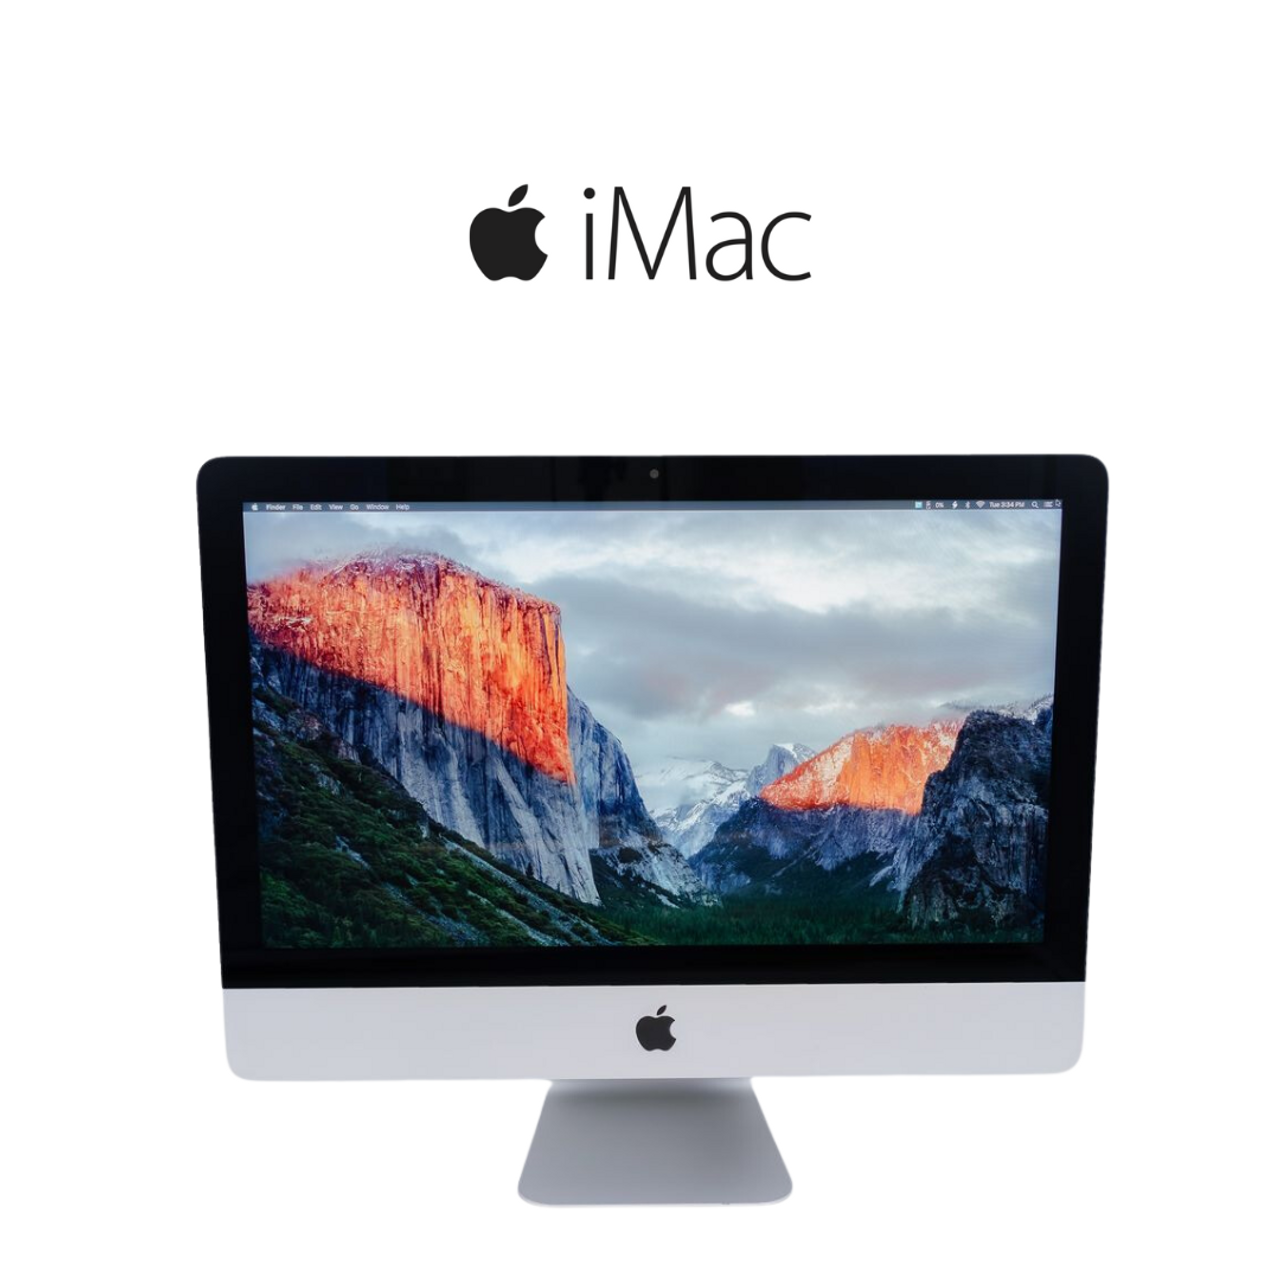 当日発送 iMac 27 inch 2012 A1419 取り付け ネジ 一式3 M ビス テレビで話題 - Macデスクトップ